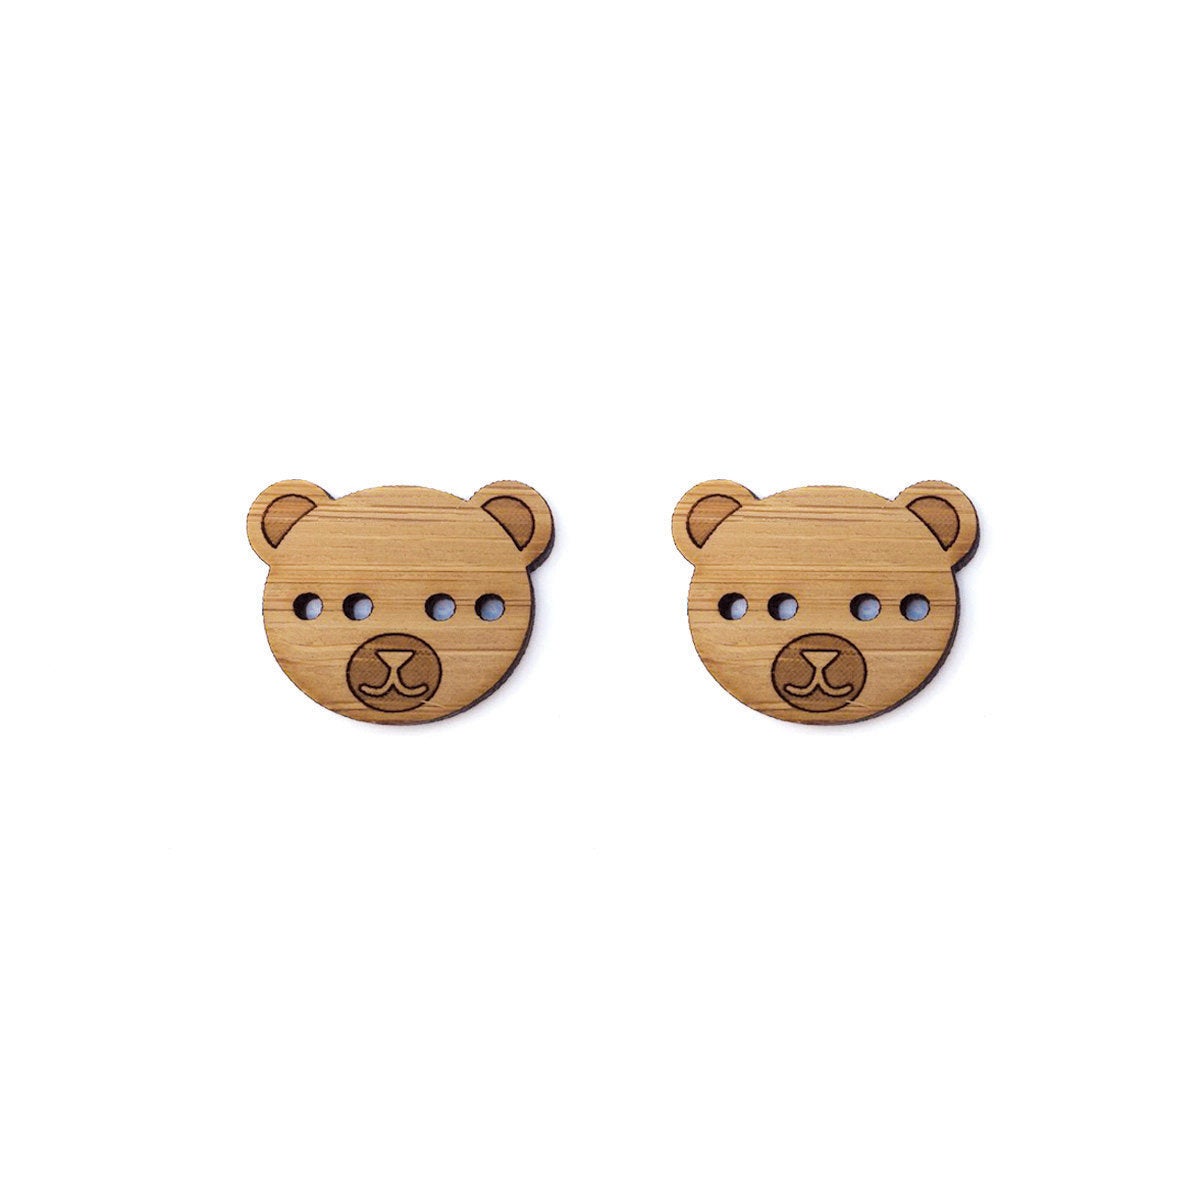 Bear Wood Button Set